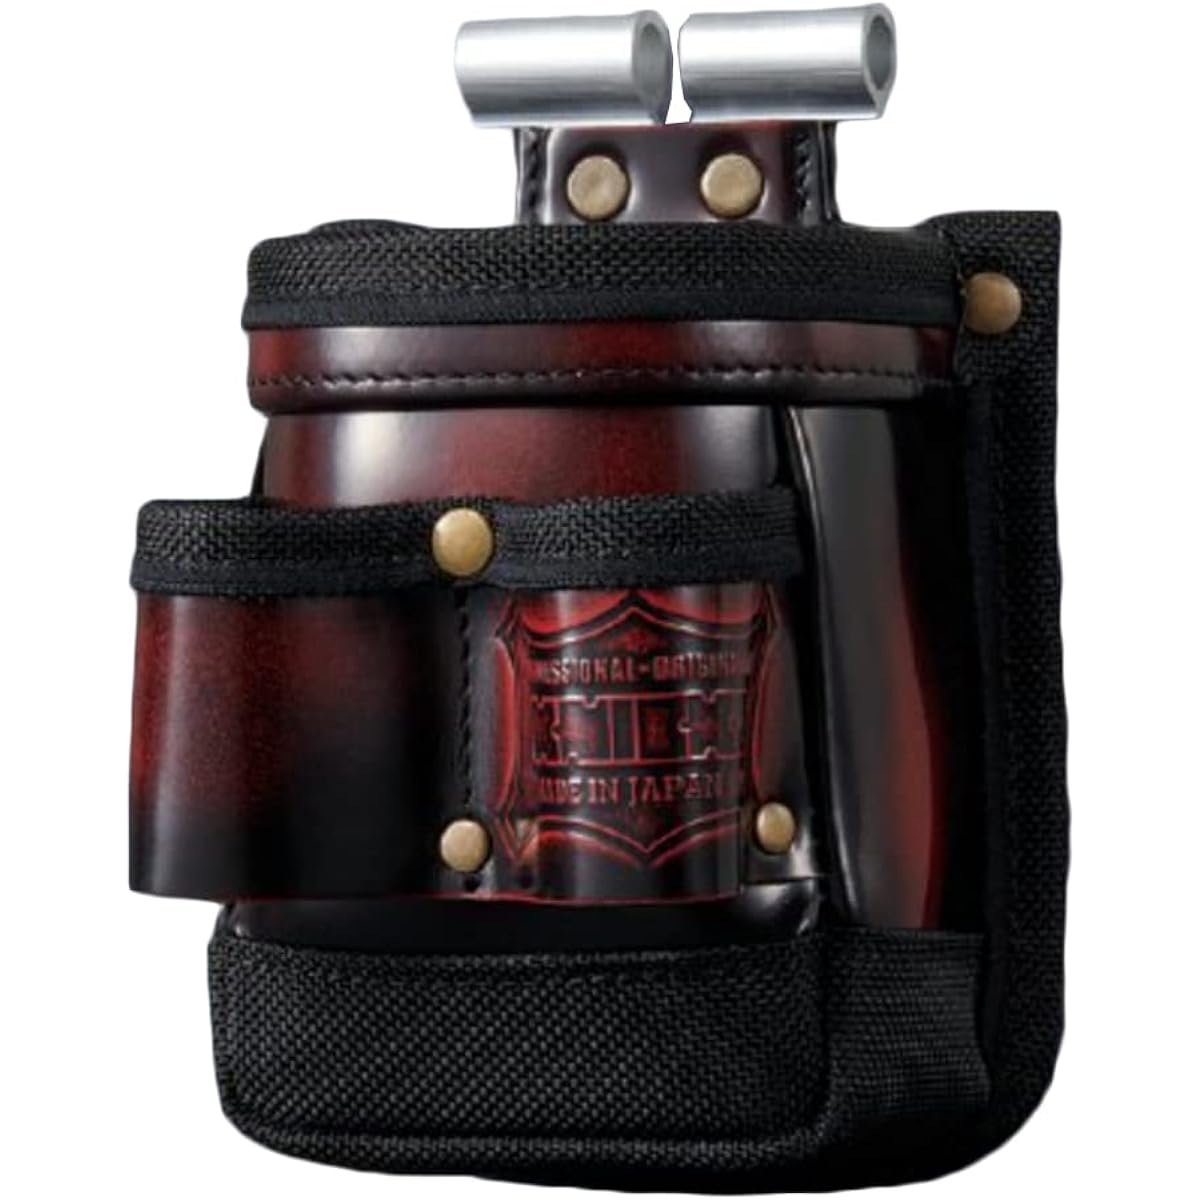 Knicks Advan glass leather VA waist bag (red) ADV-201TG-R